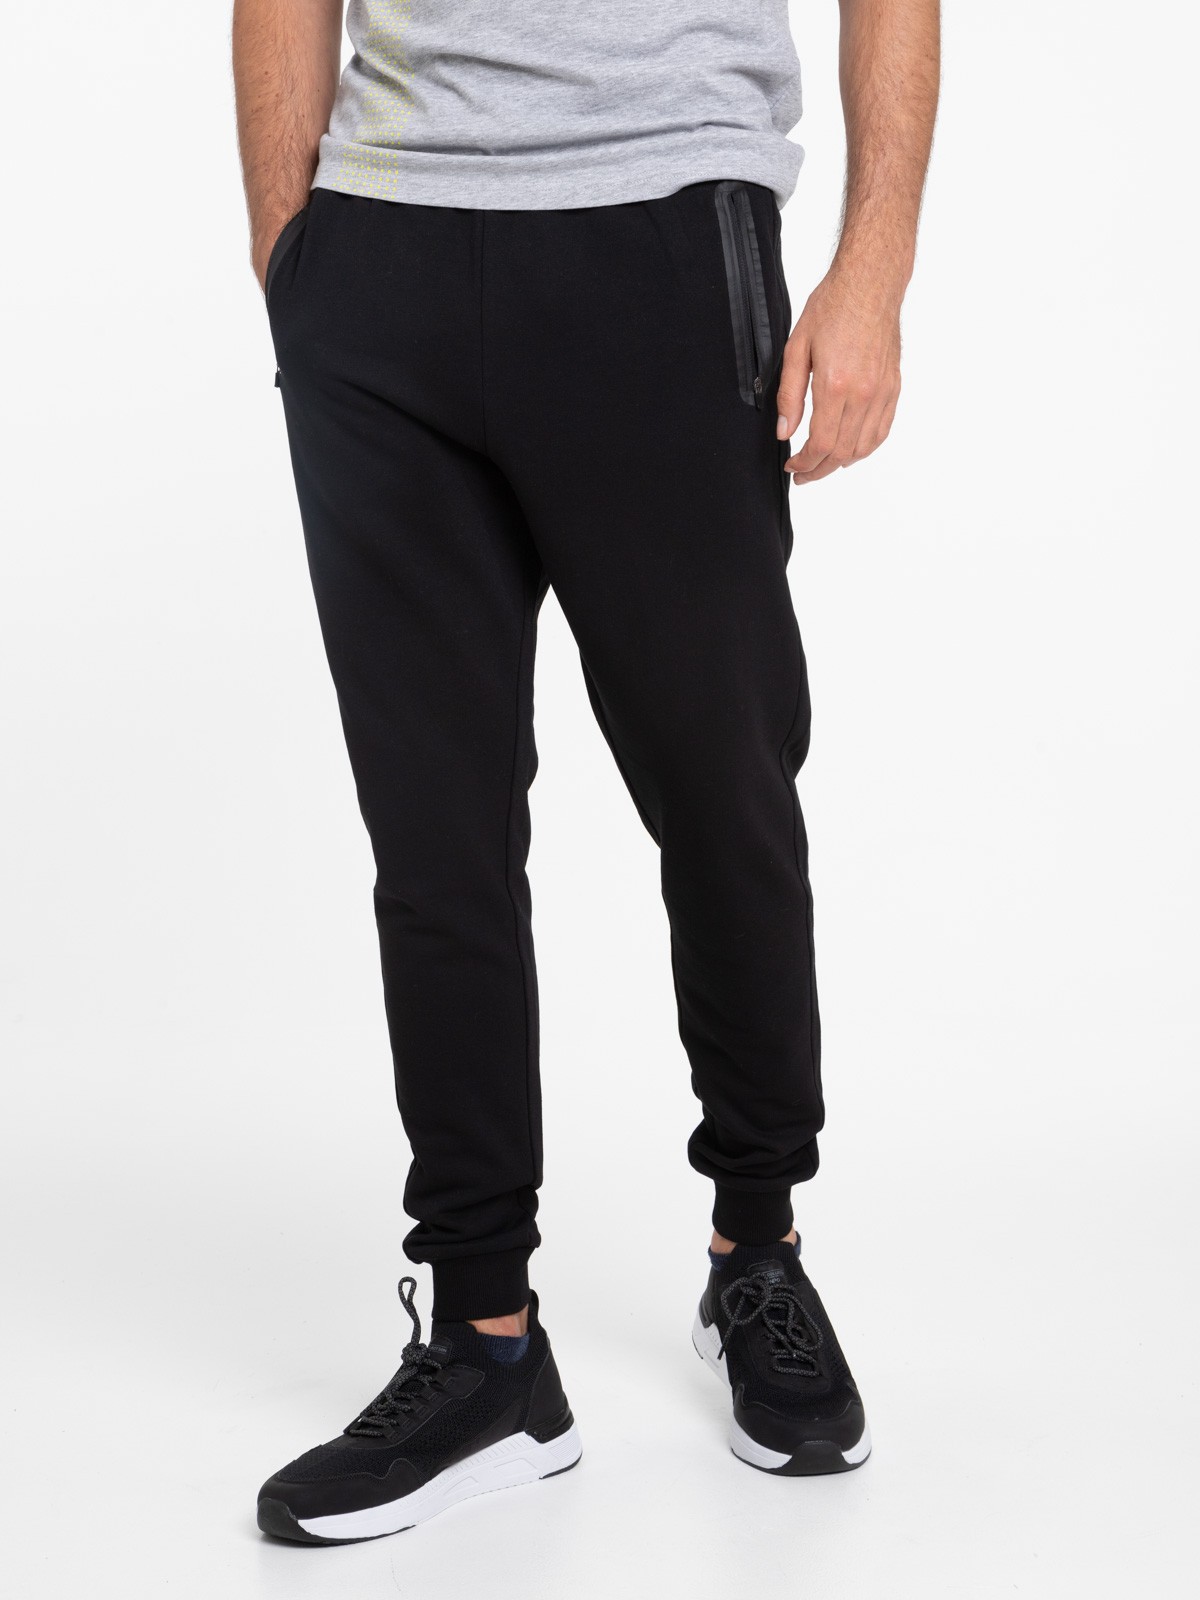 Pantalon de jogging noir homme - DistriCenter